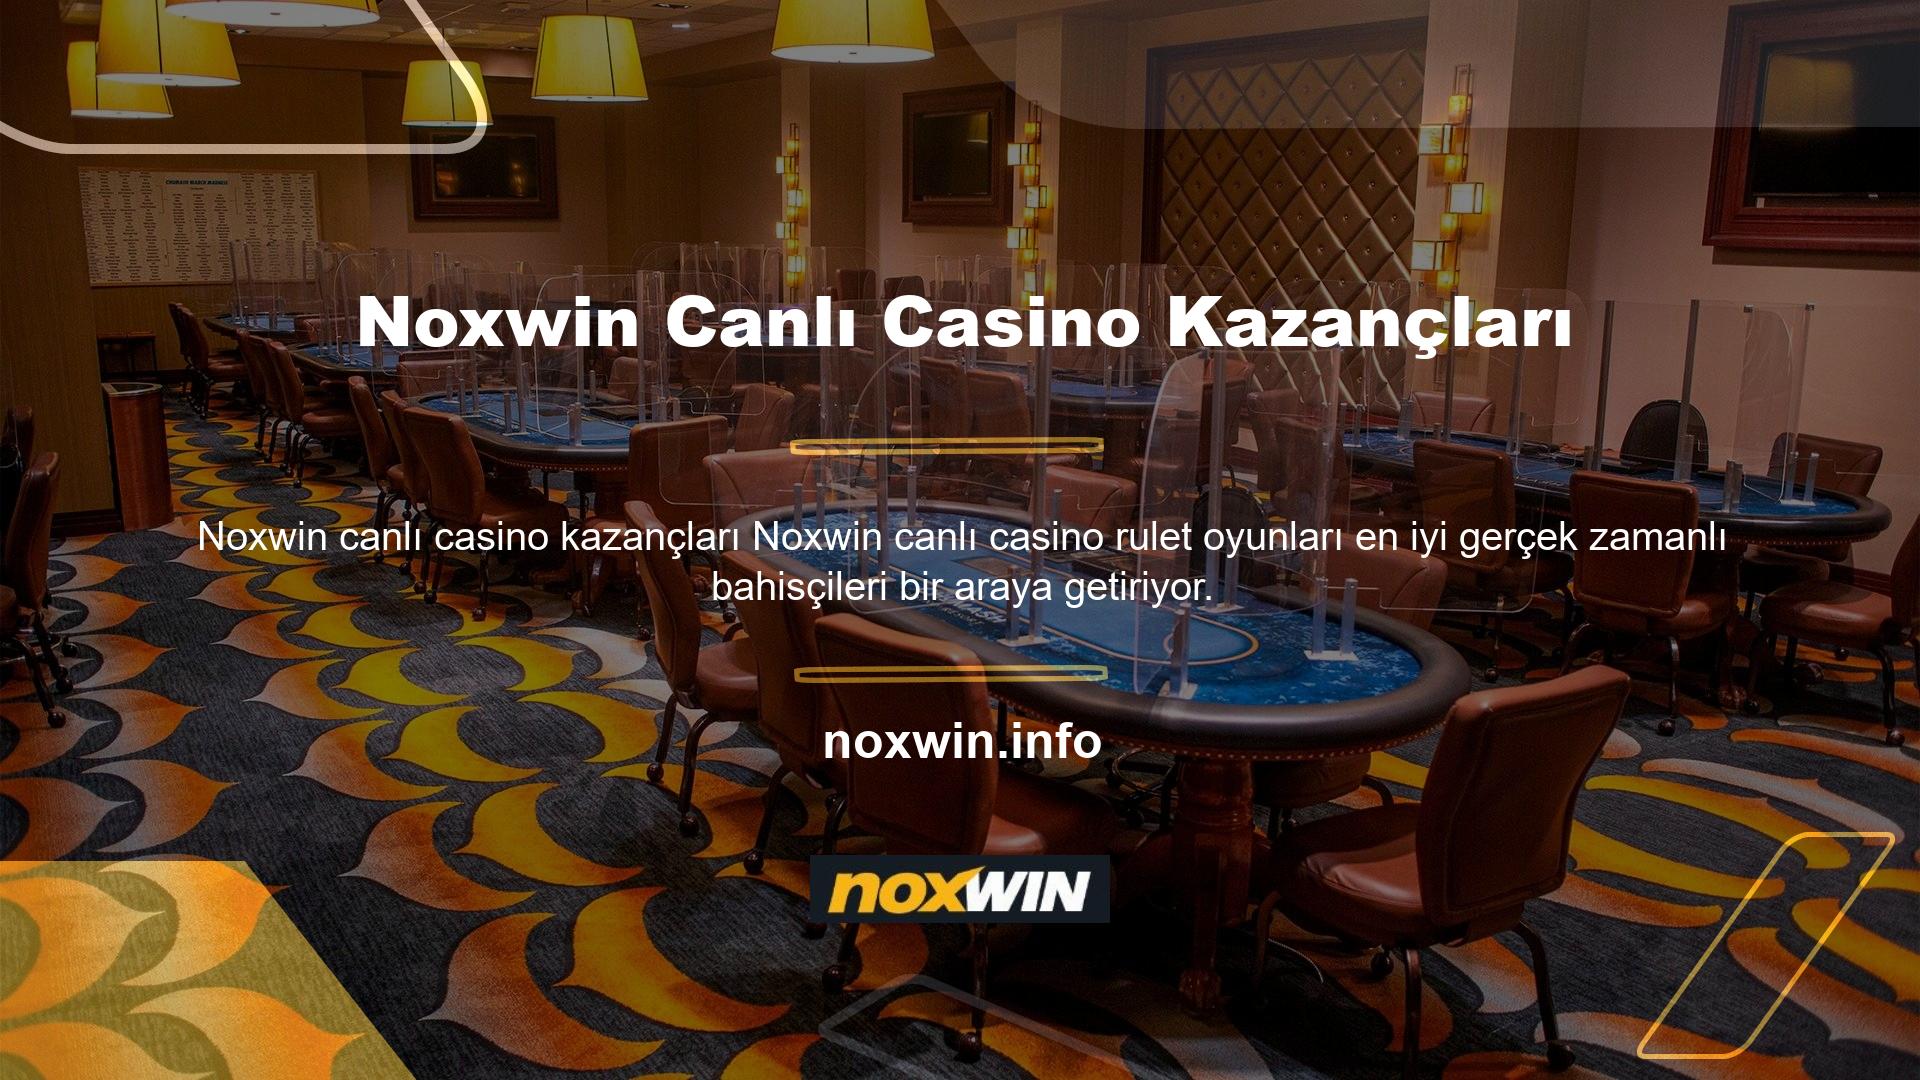 Site, canlı casinolarda çok iddialı bir girişimde bulundu